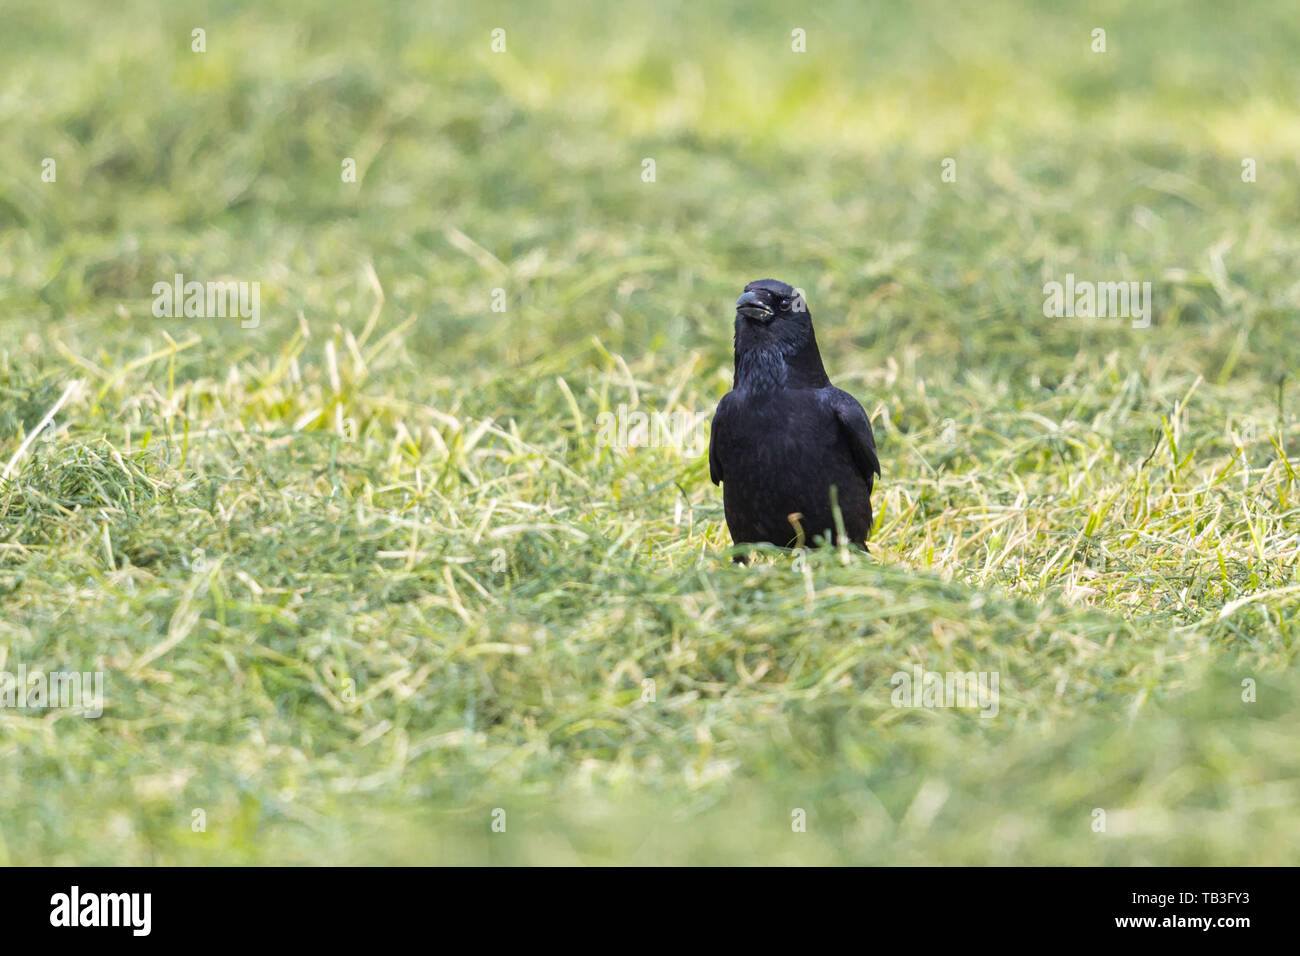 Naturel noir corneille (Corvus corone) debout dans l'herbe Banque D'Images